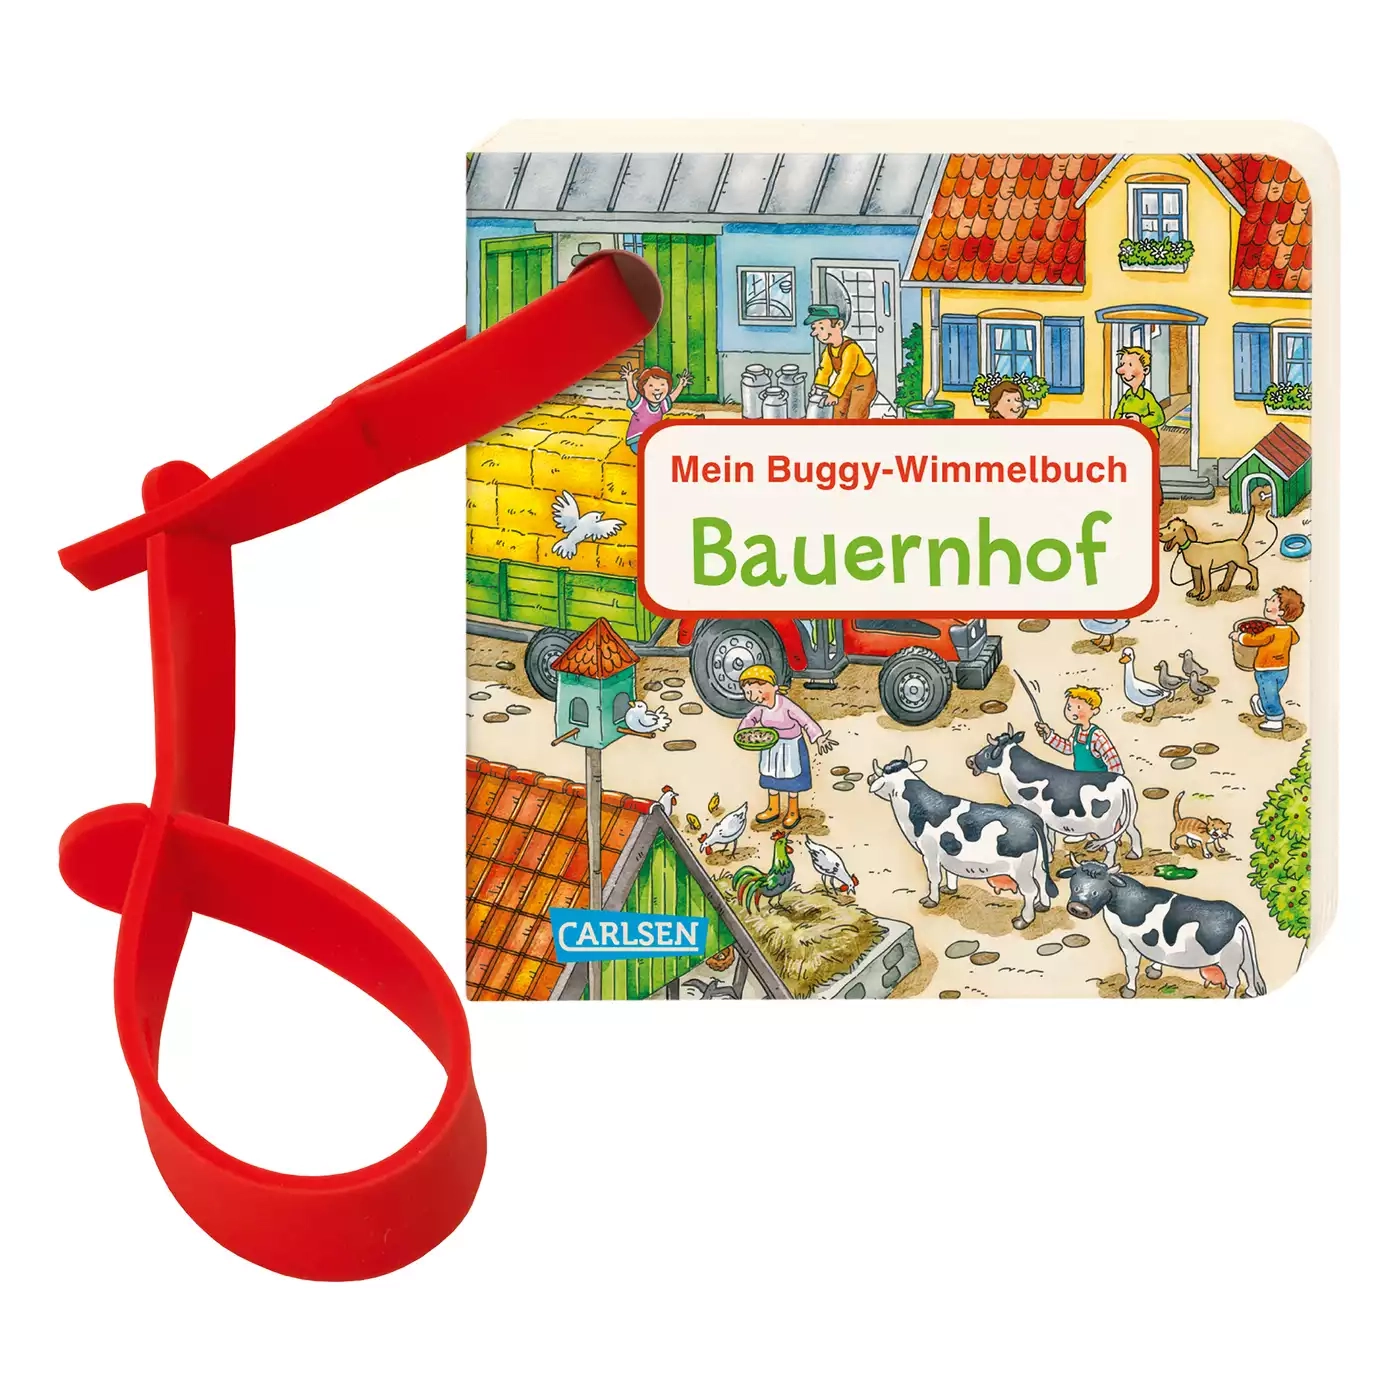 Mein Buggy-Wimmelbuch Bauernhof CARLSEN Mehrfarbig 2000576422280 1